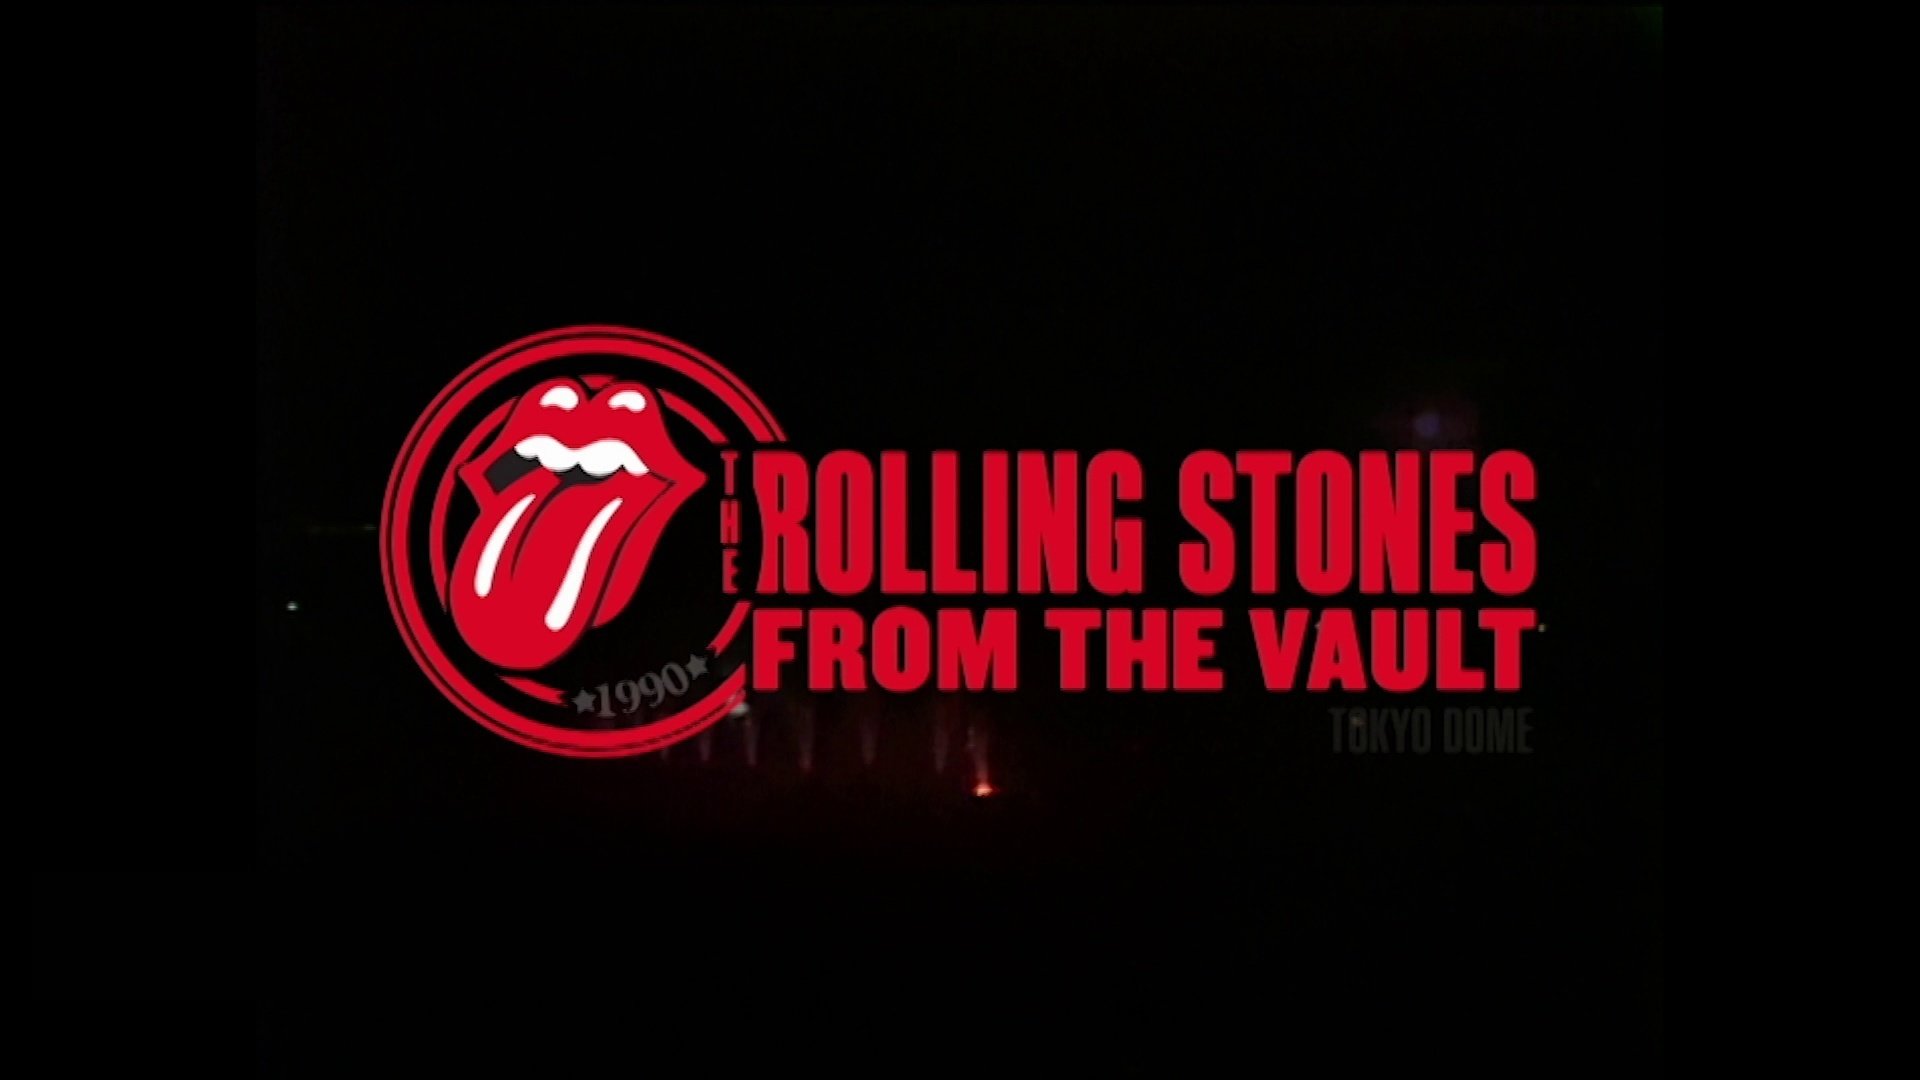 Download Hd 1080p The Rolling Stones Desktop Wallpaper - Rolling Stones Wallpapers Hd - HD Wallpaper 